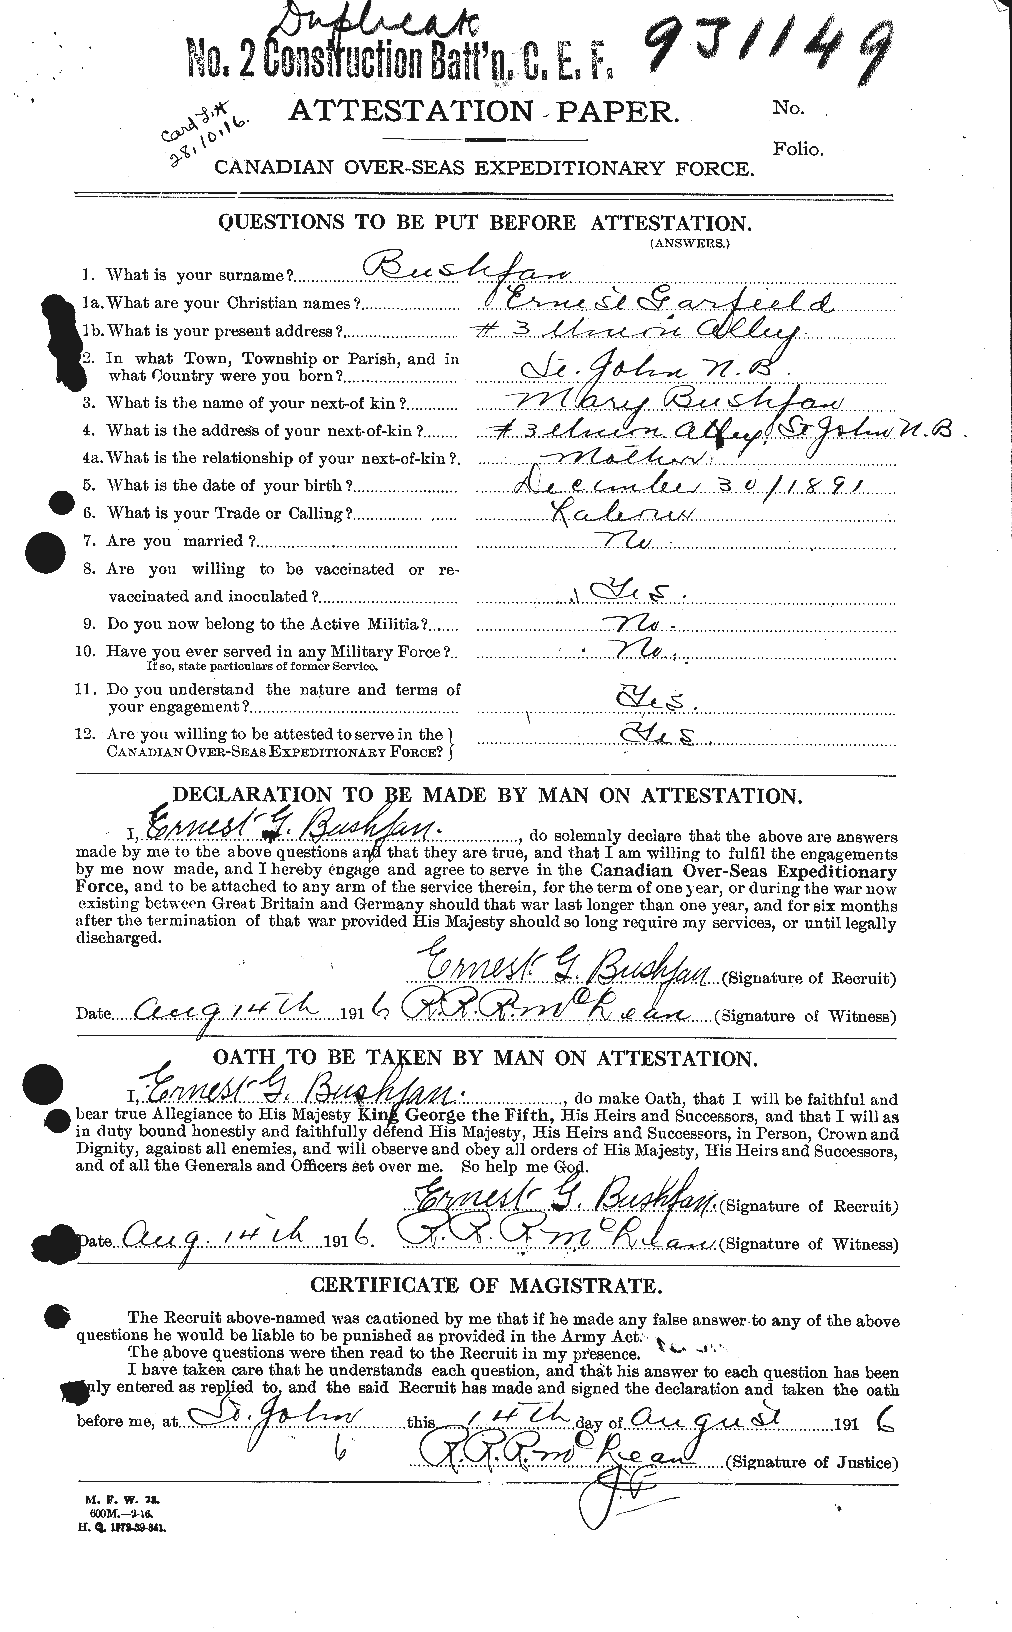 Dossiers du Personnel de la Première Guerre mondiale - CEC 274510a